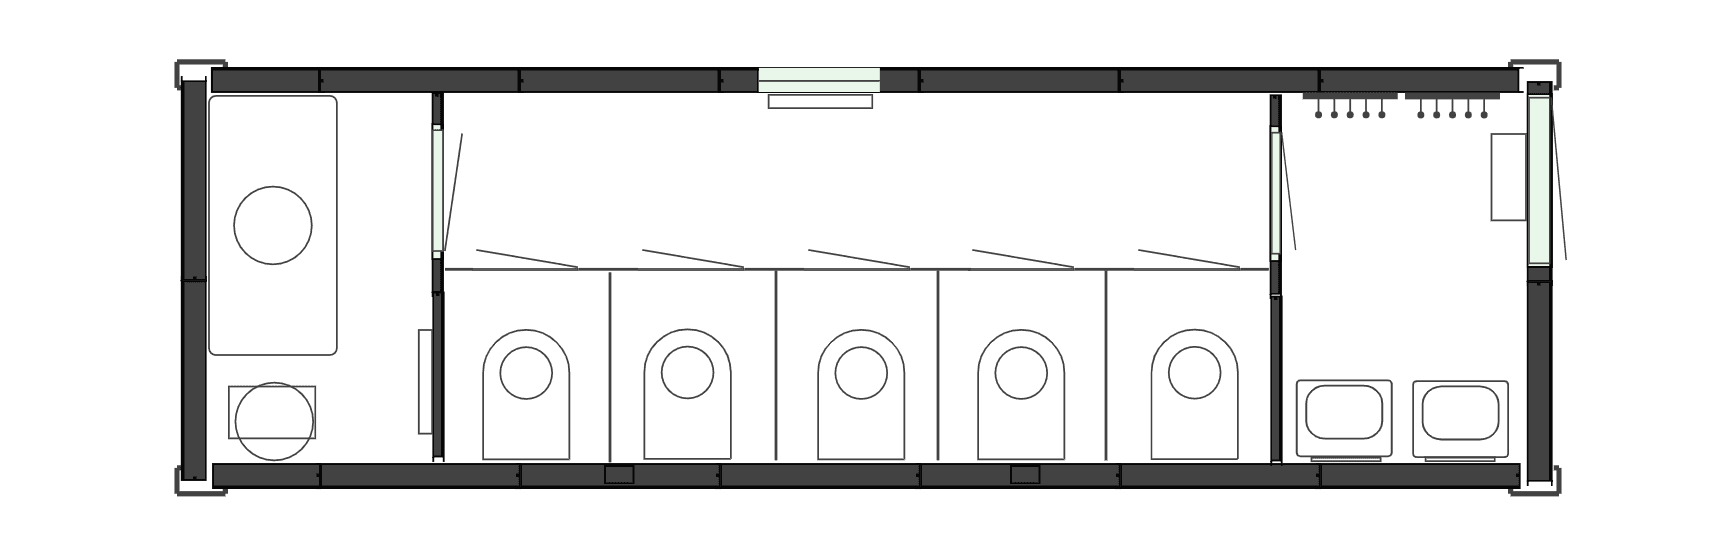 Планировочное решение - Вагон-туалет на 5 кабинок